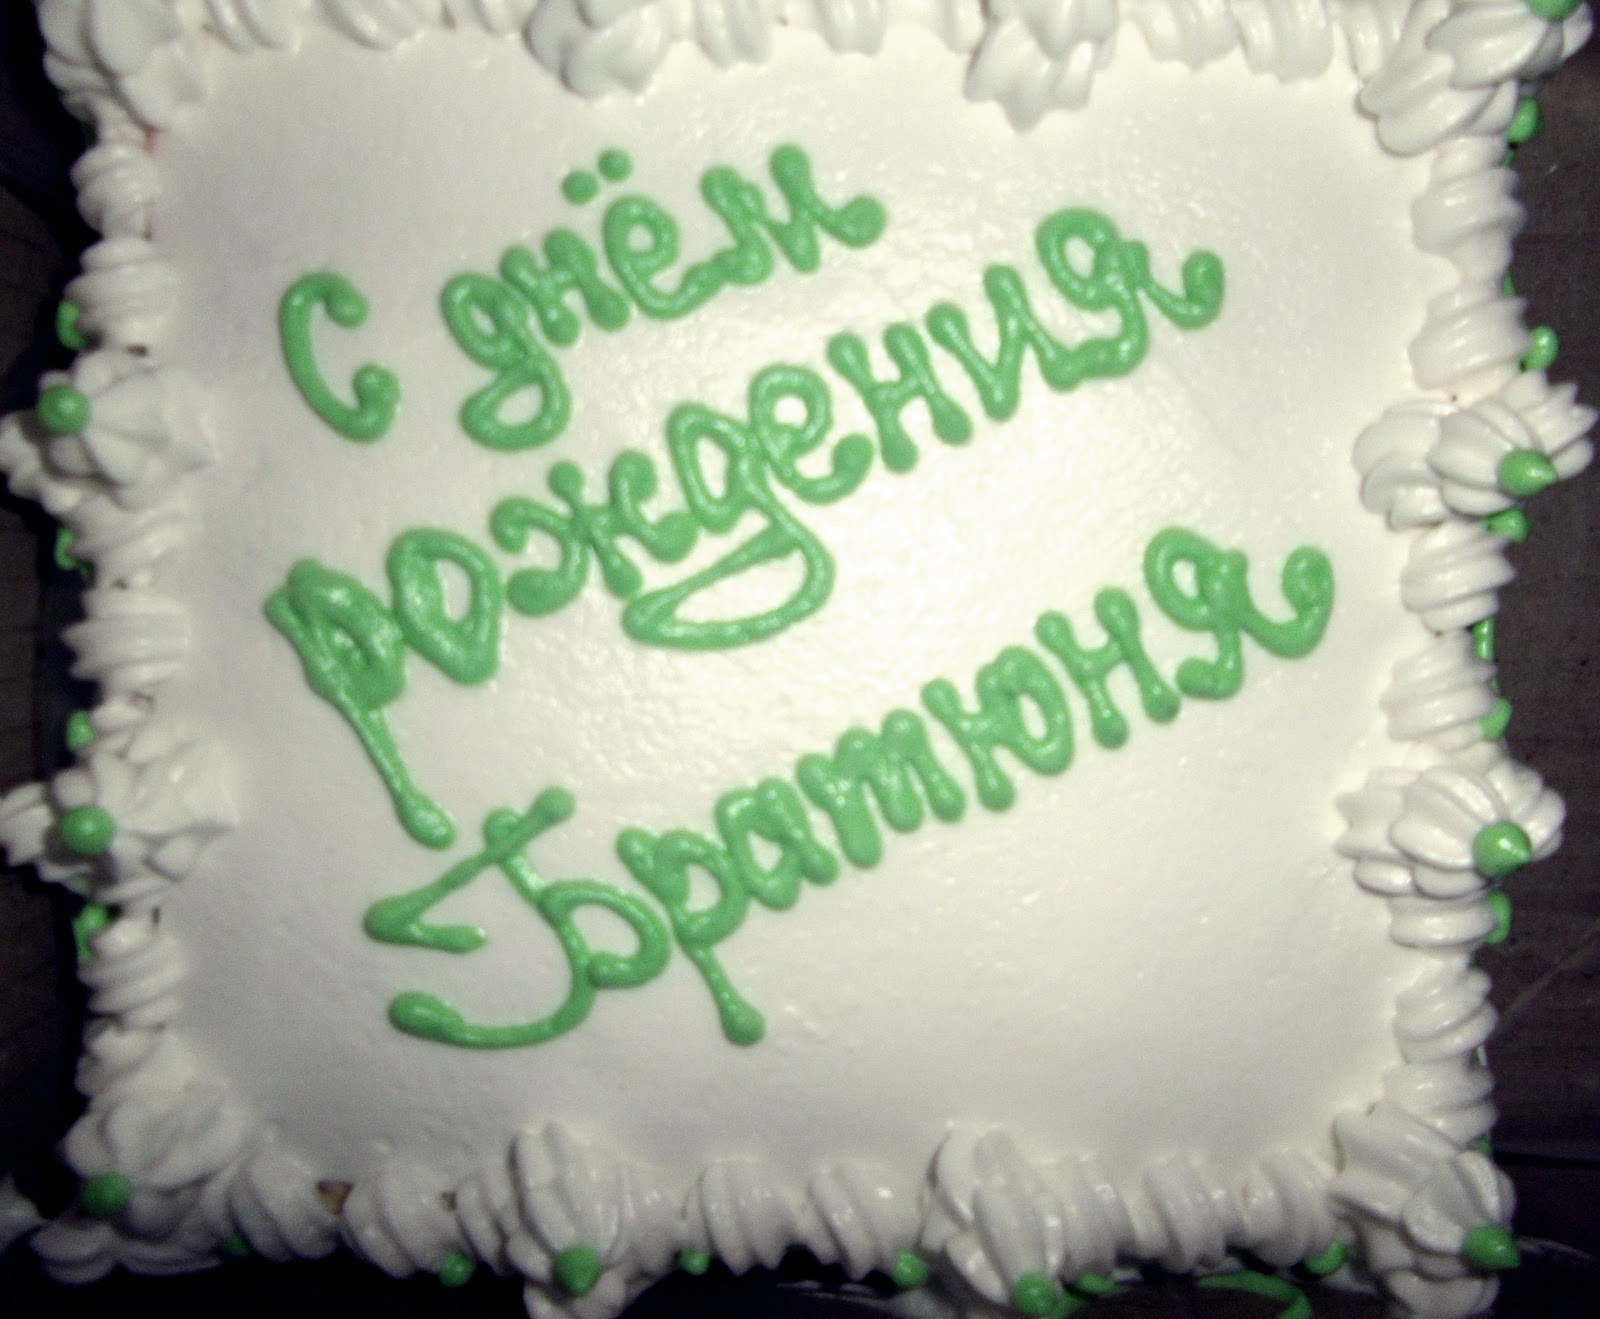 Надпись на торт с днем рождения братишка